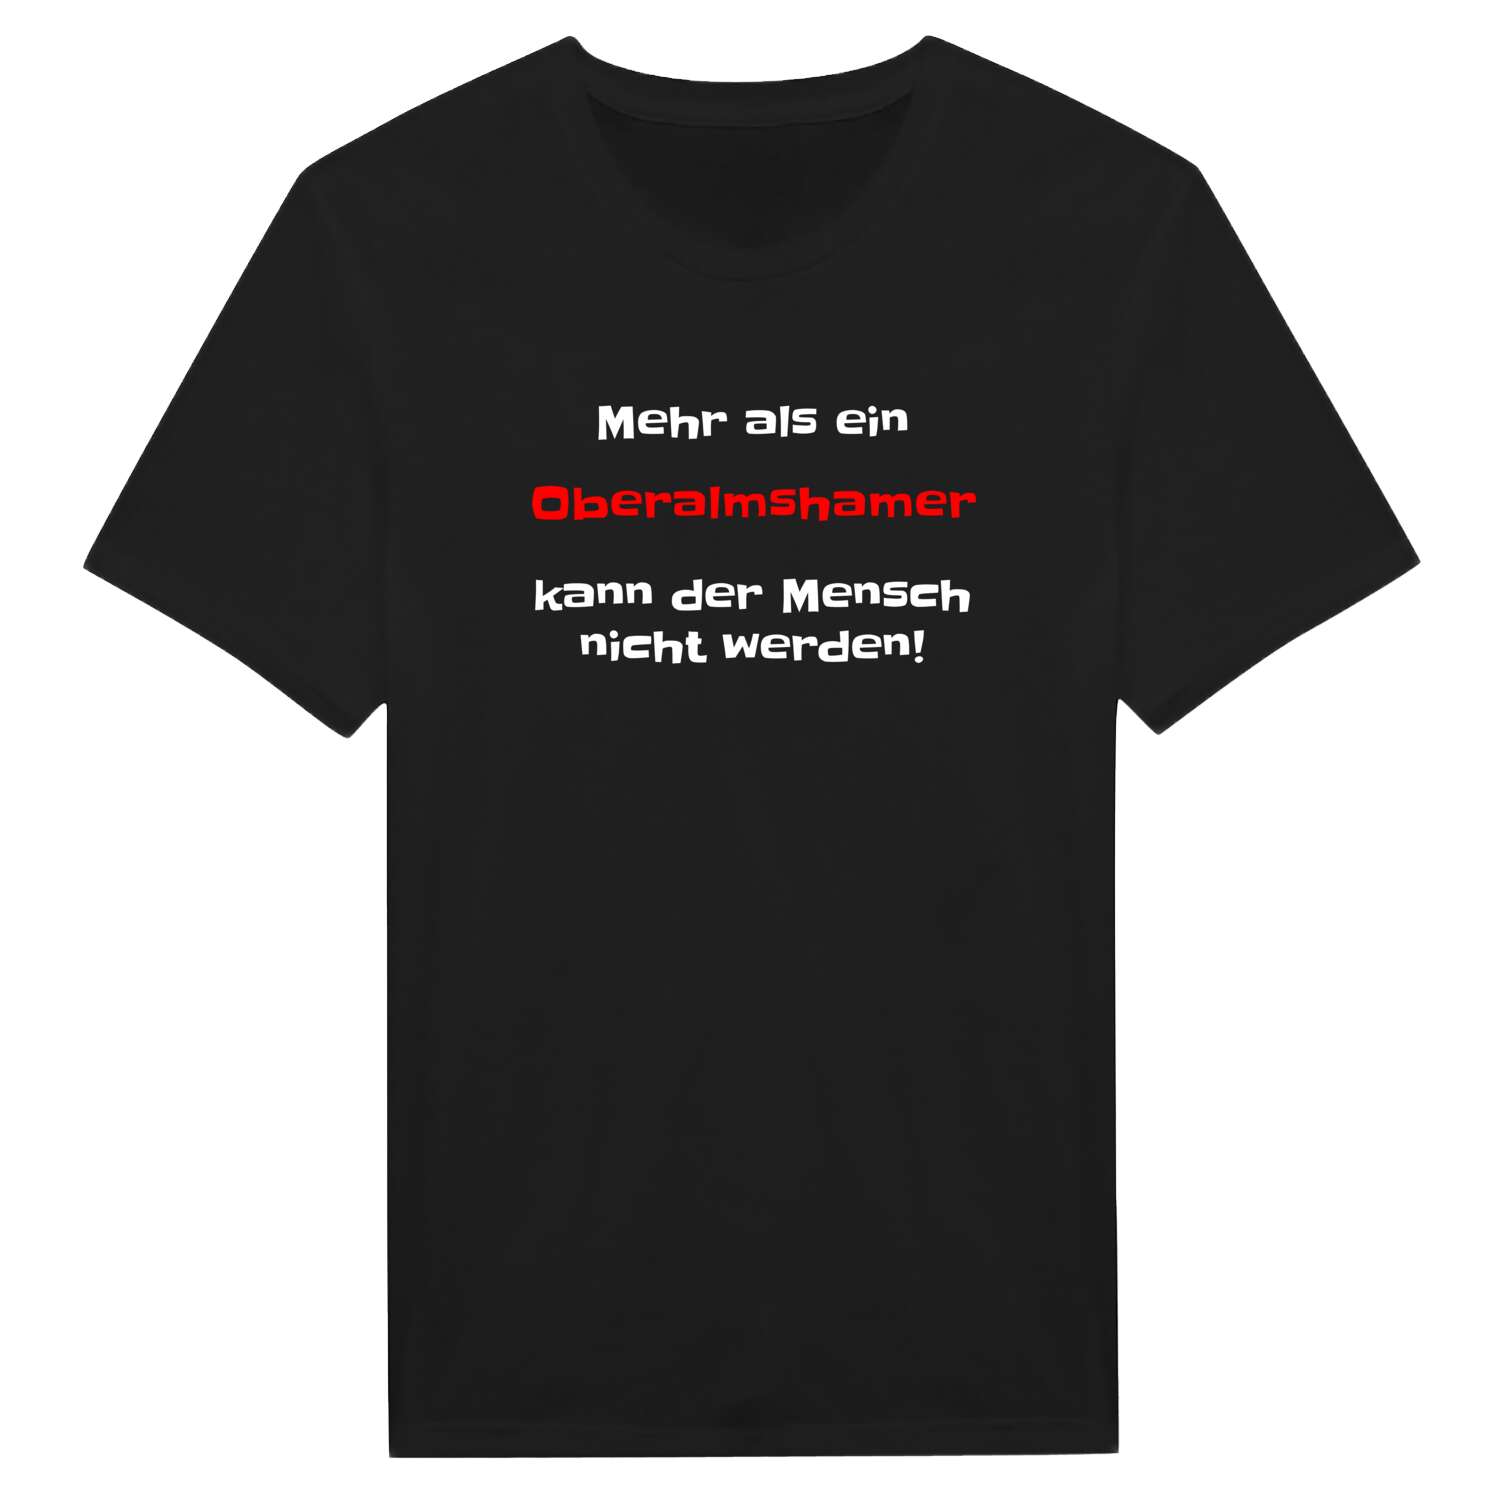 Oberalmsham T-Shirt »Mehr als ein«